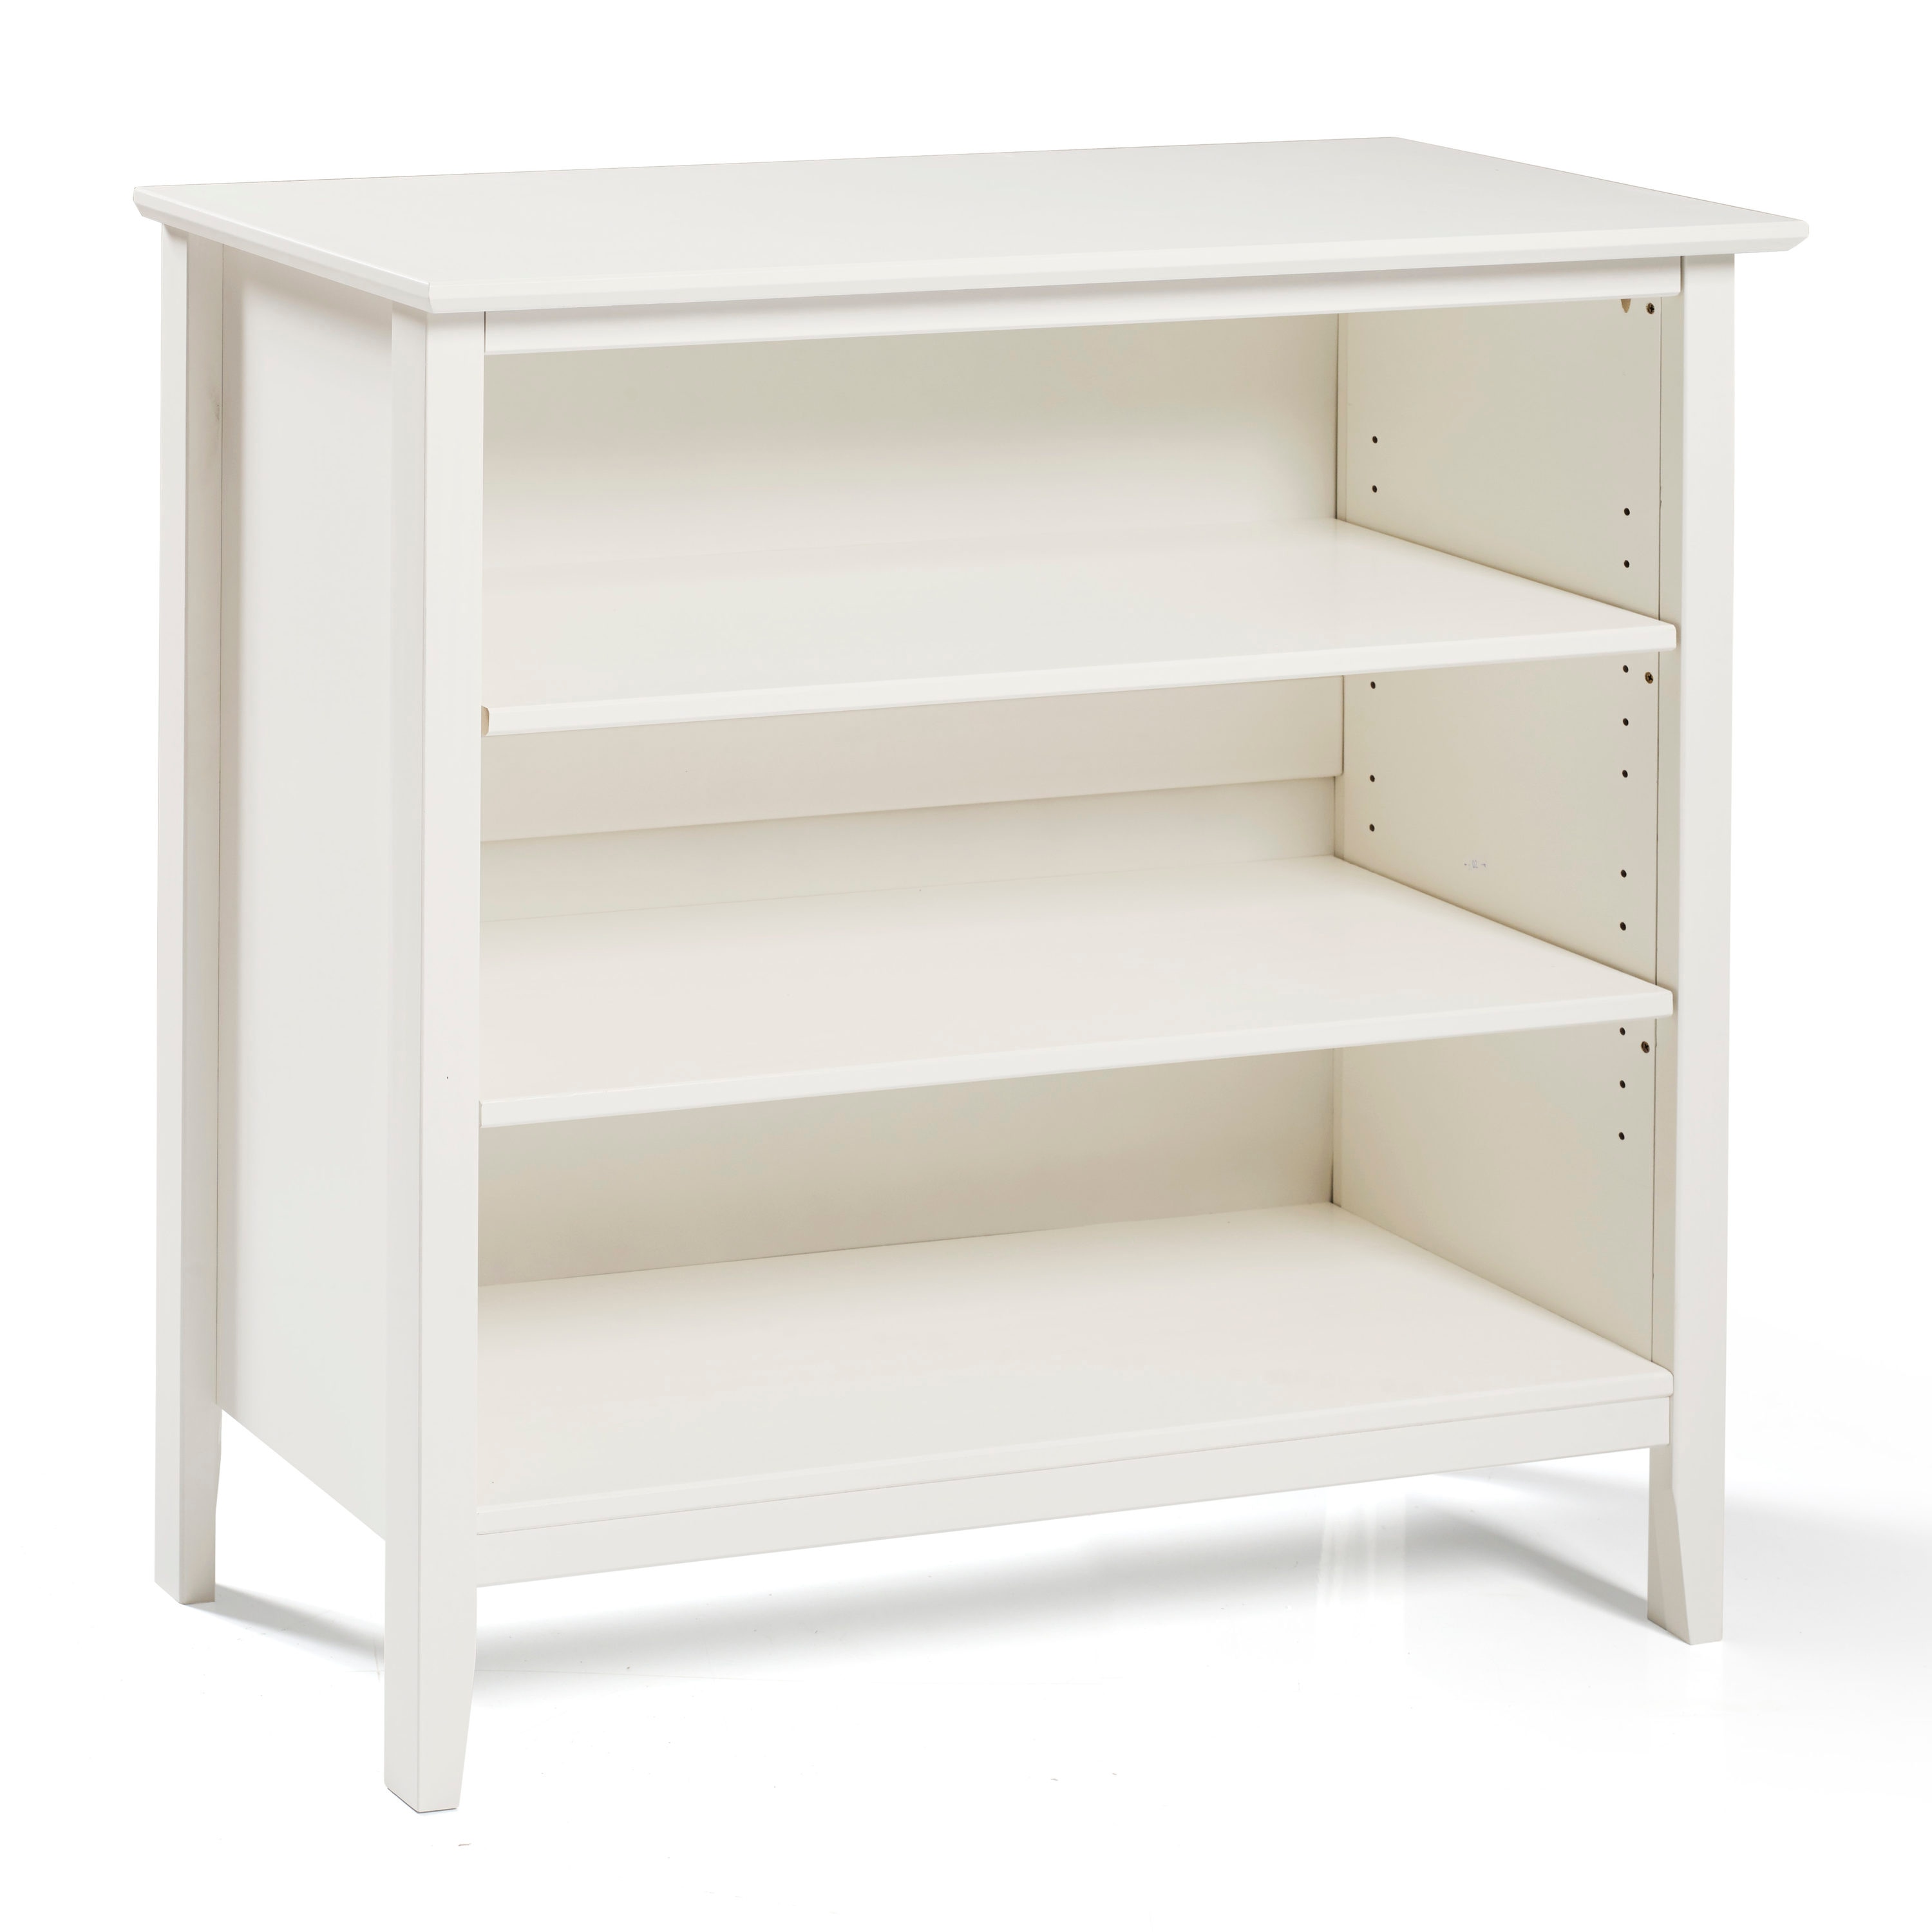 White Wood 3 Shelf Modular Bookcase, 3 Shelf White Wood Bookcase